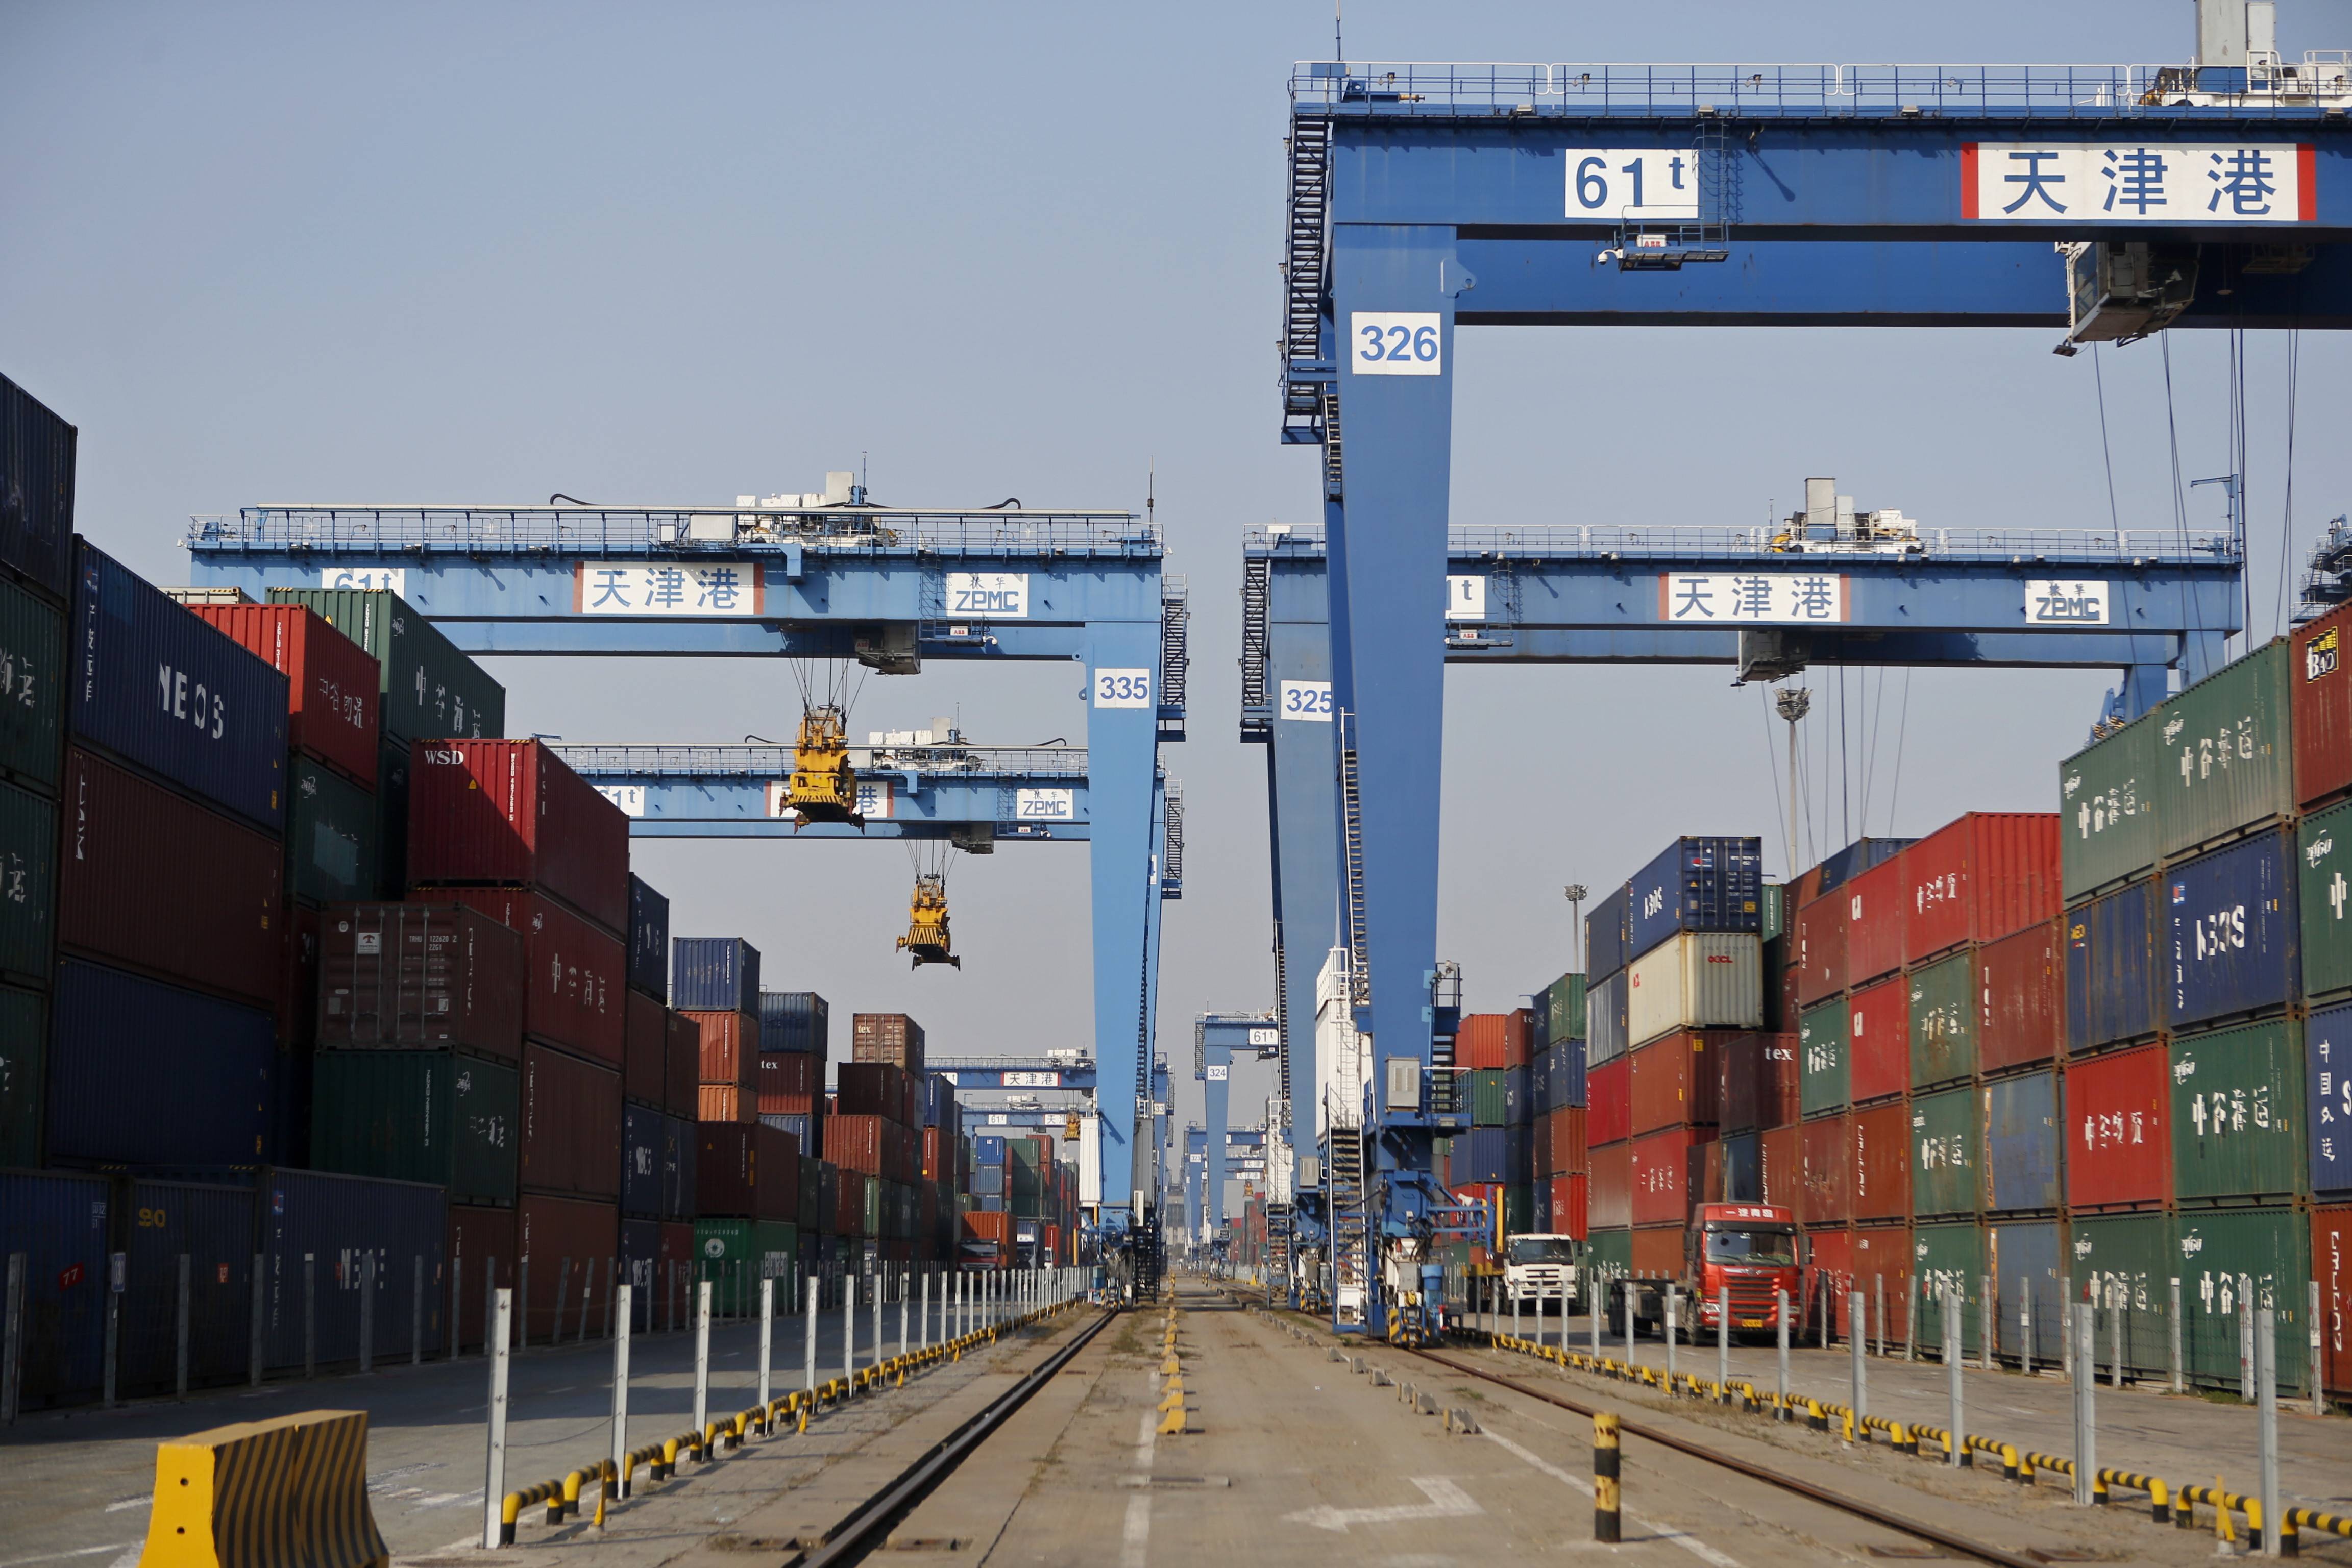 丁洪法 摄11月4日,一辆货车在天津港东突堤码头智能解锁站内解锁